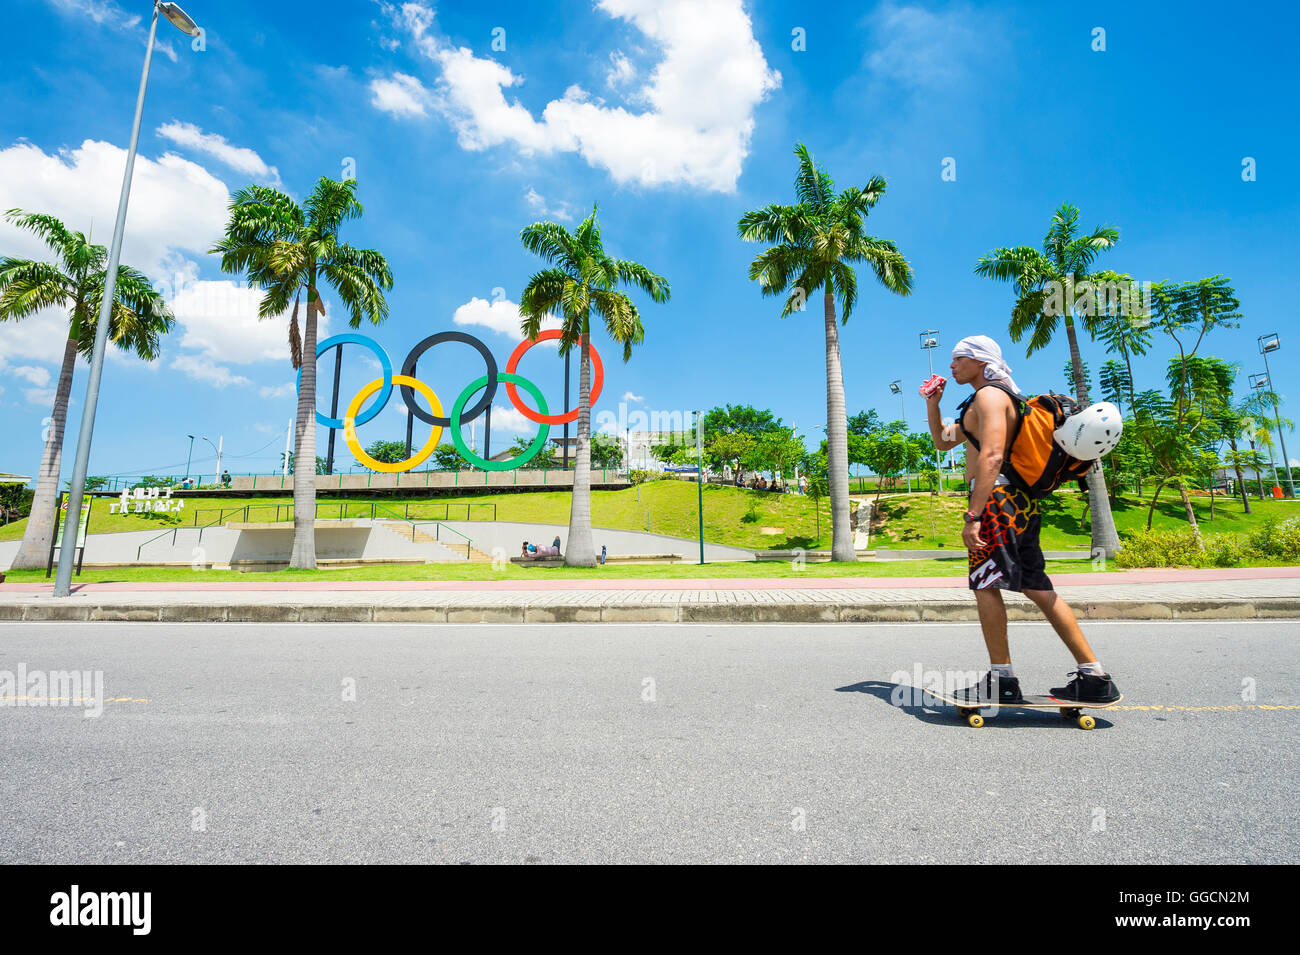 RIO DE JANEIRO - Mars 18, 2016 : un jeune skateur professionnel en face de patins installés pour les anneaux olympiques Jeux d'été 2016. Banque D'Images